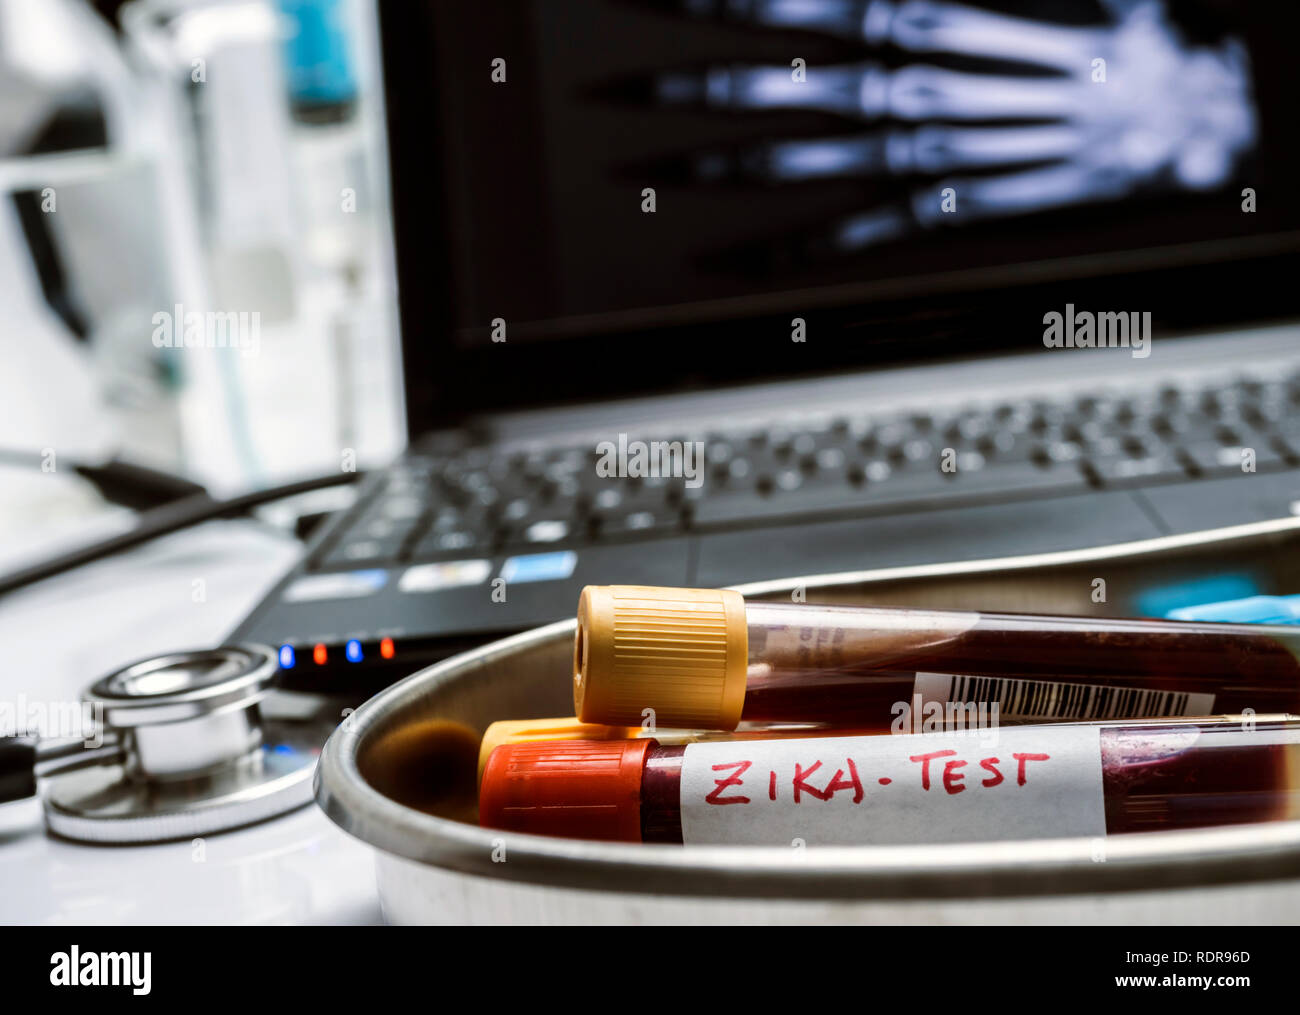 Test de zika virus, un échantillon de sang dans un hôpital, conceptual image Banque D'Images